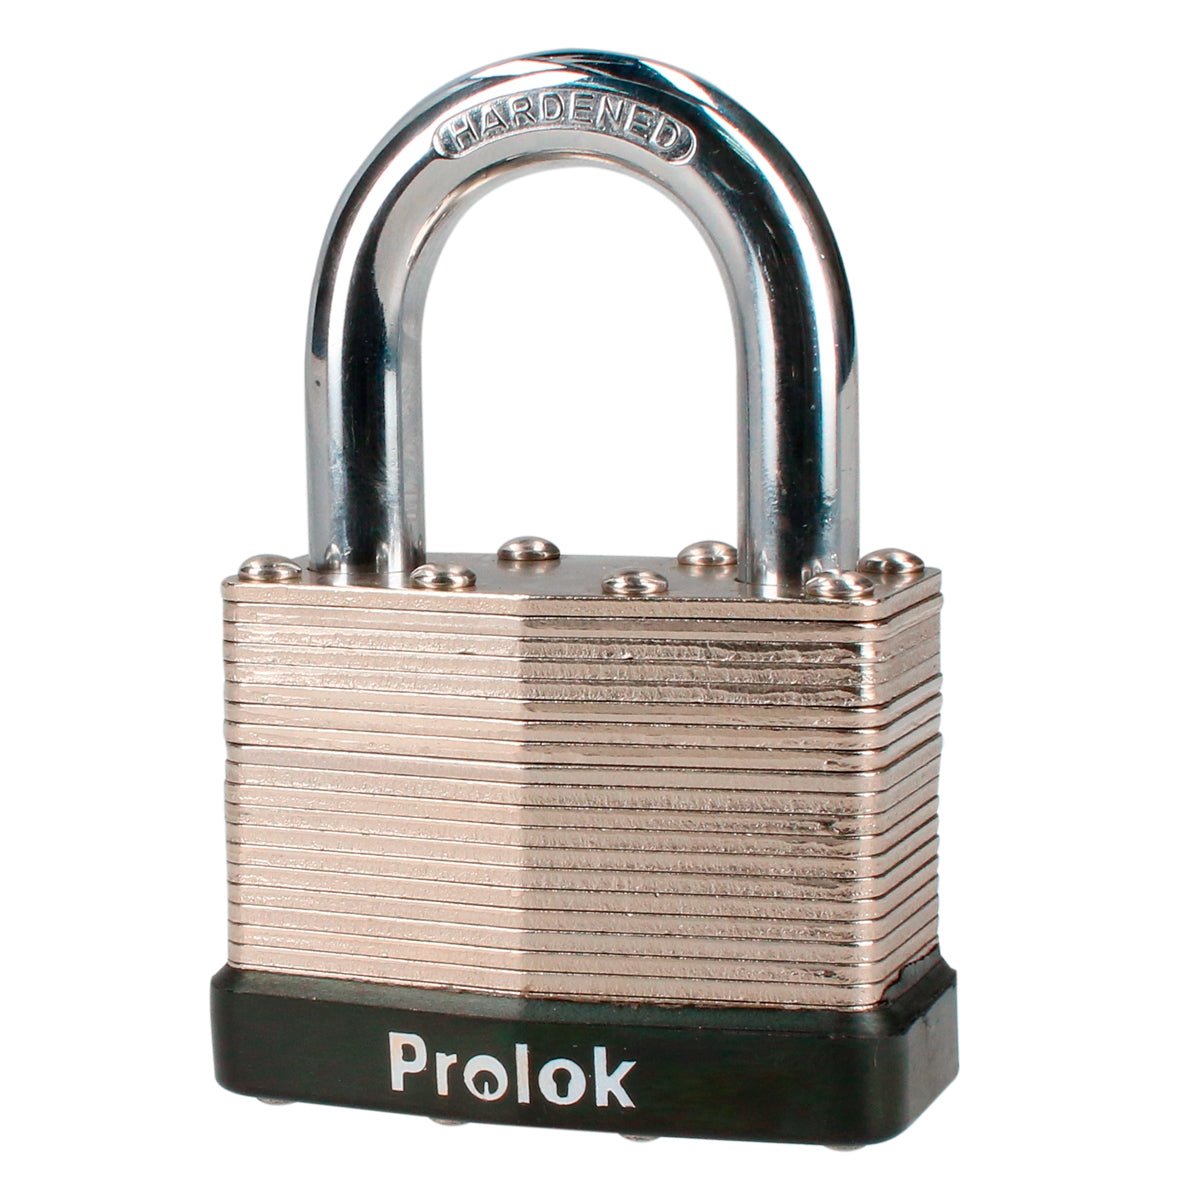 Candado laminado corto, llave estándar Prolok - FERRETERÍA WITZI